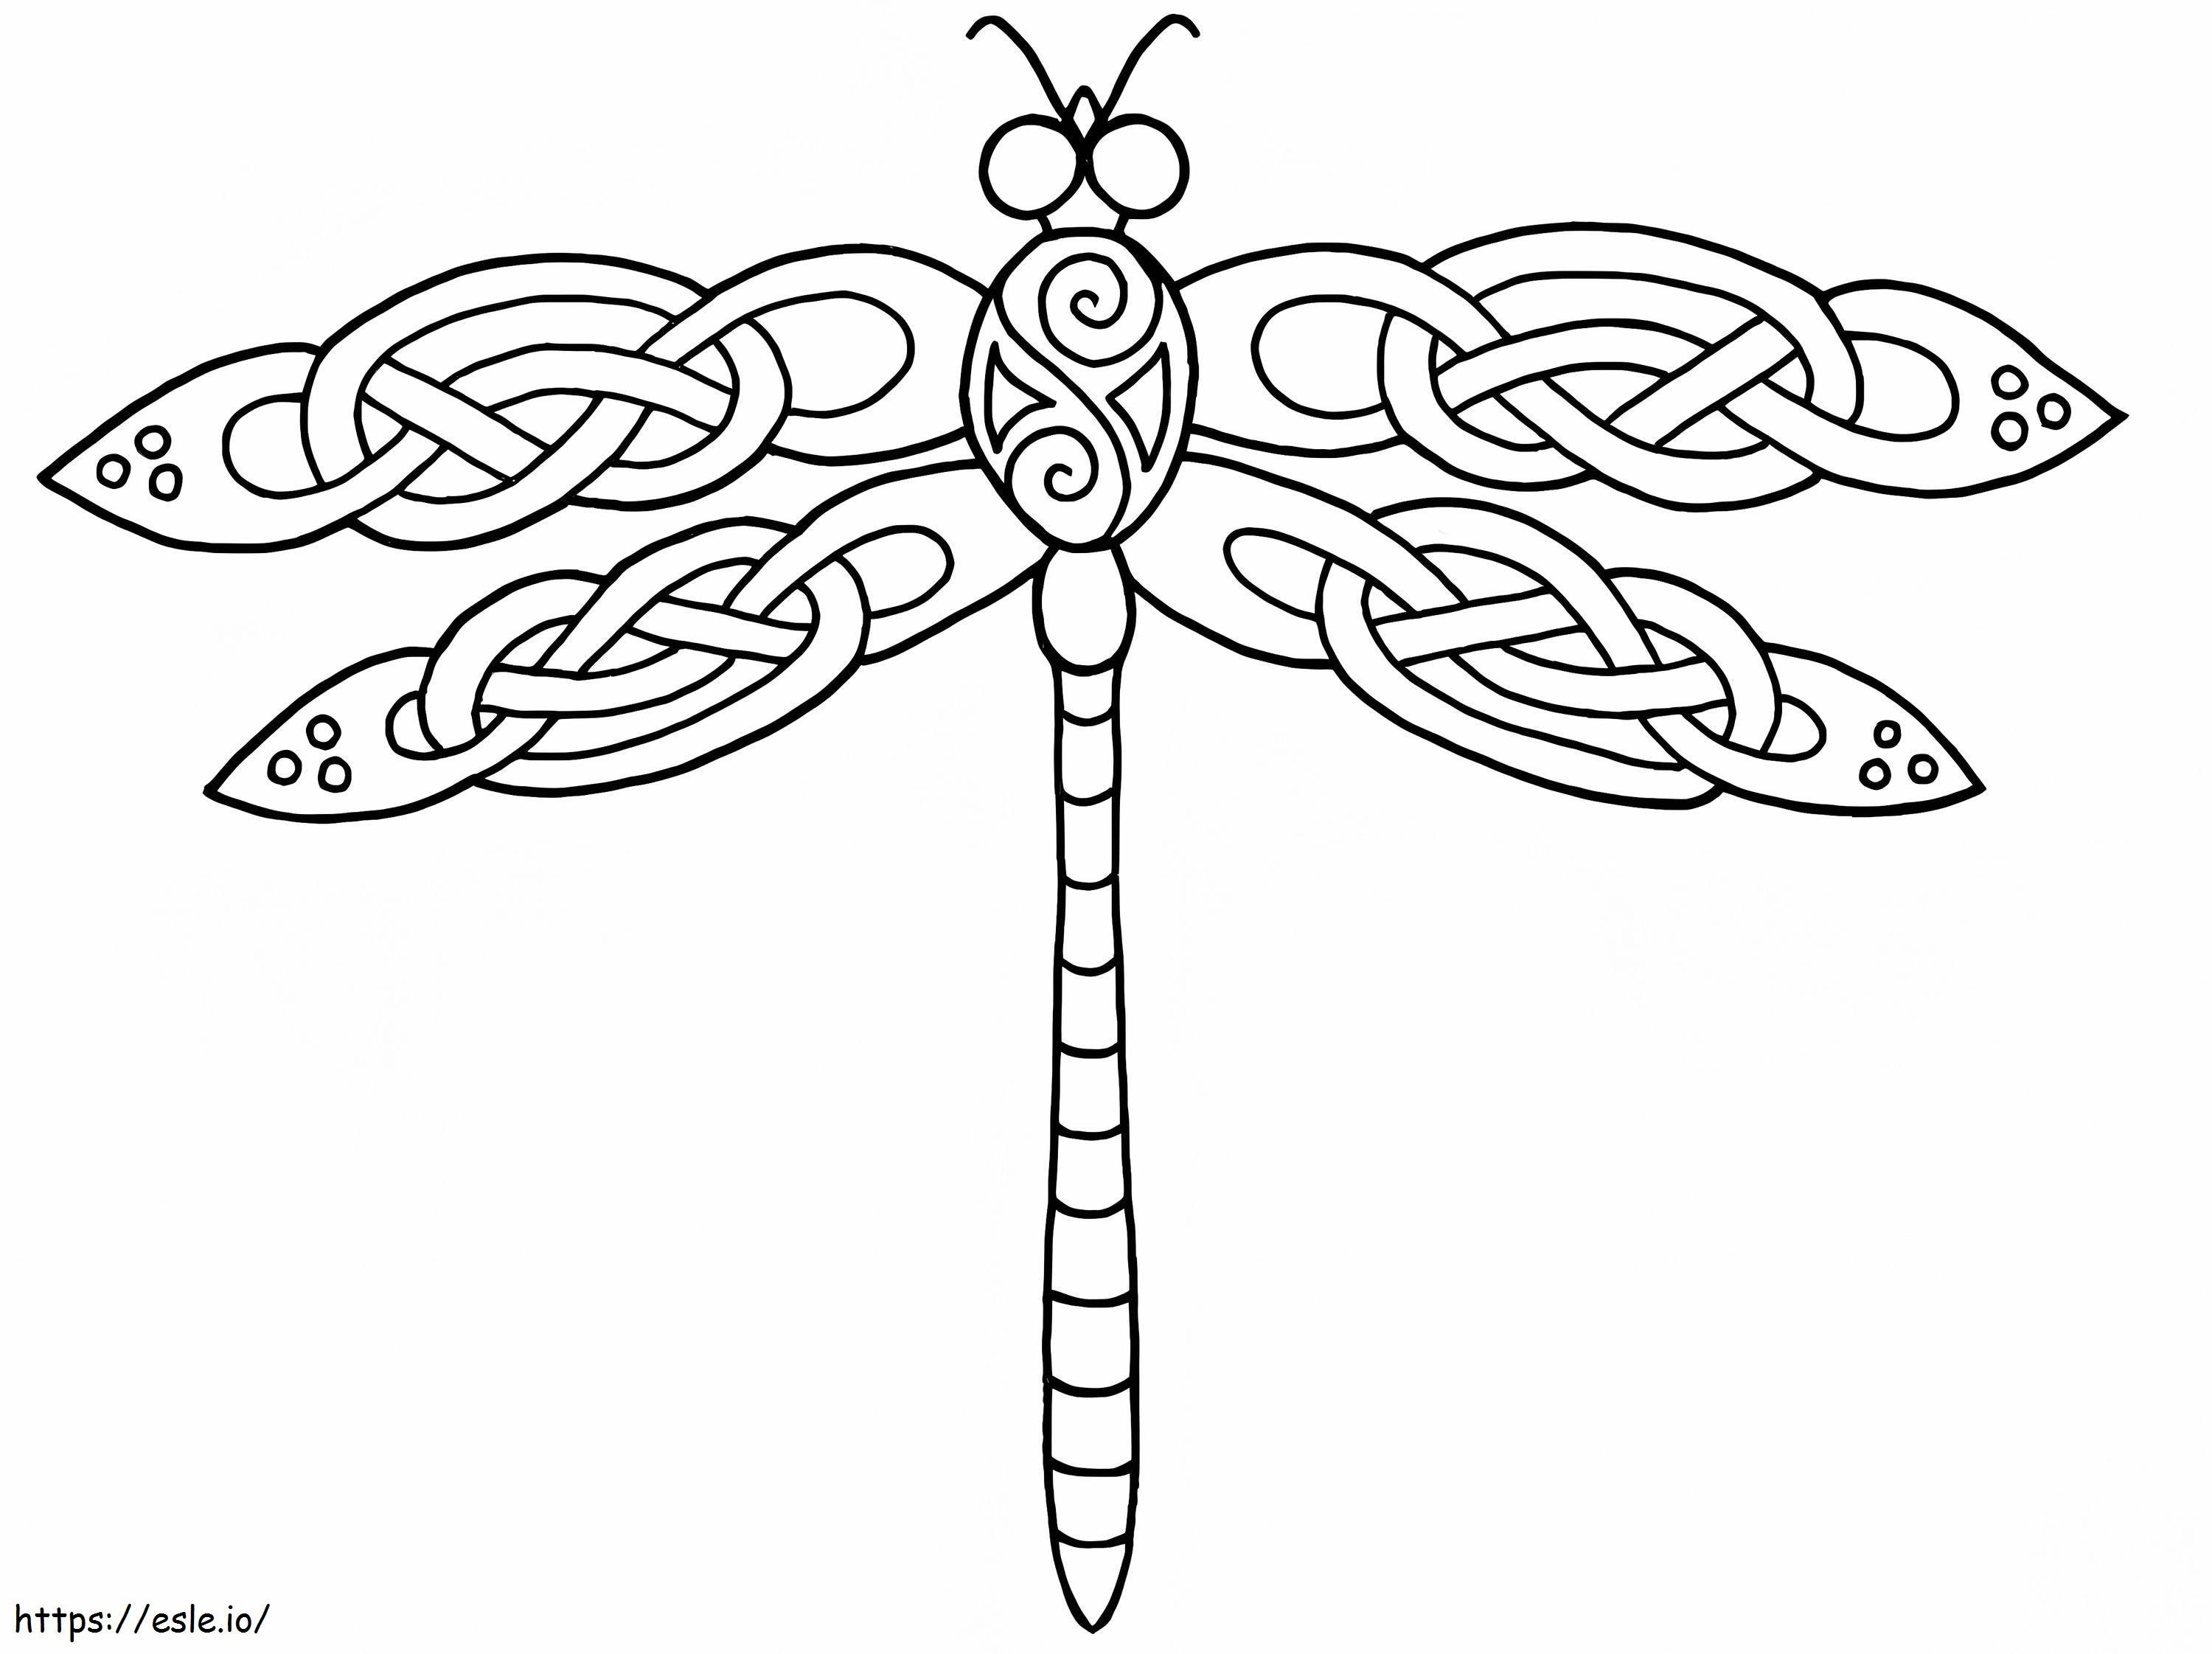 Keltisches Libellen-Design ausmalbilder